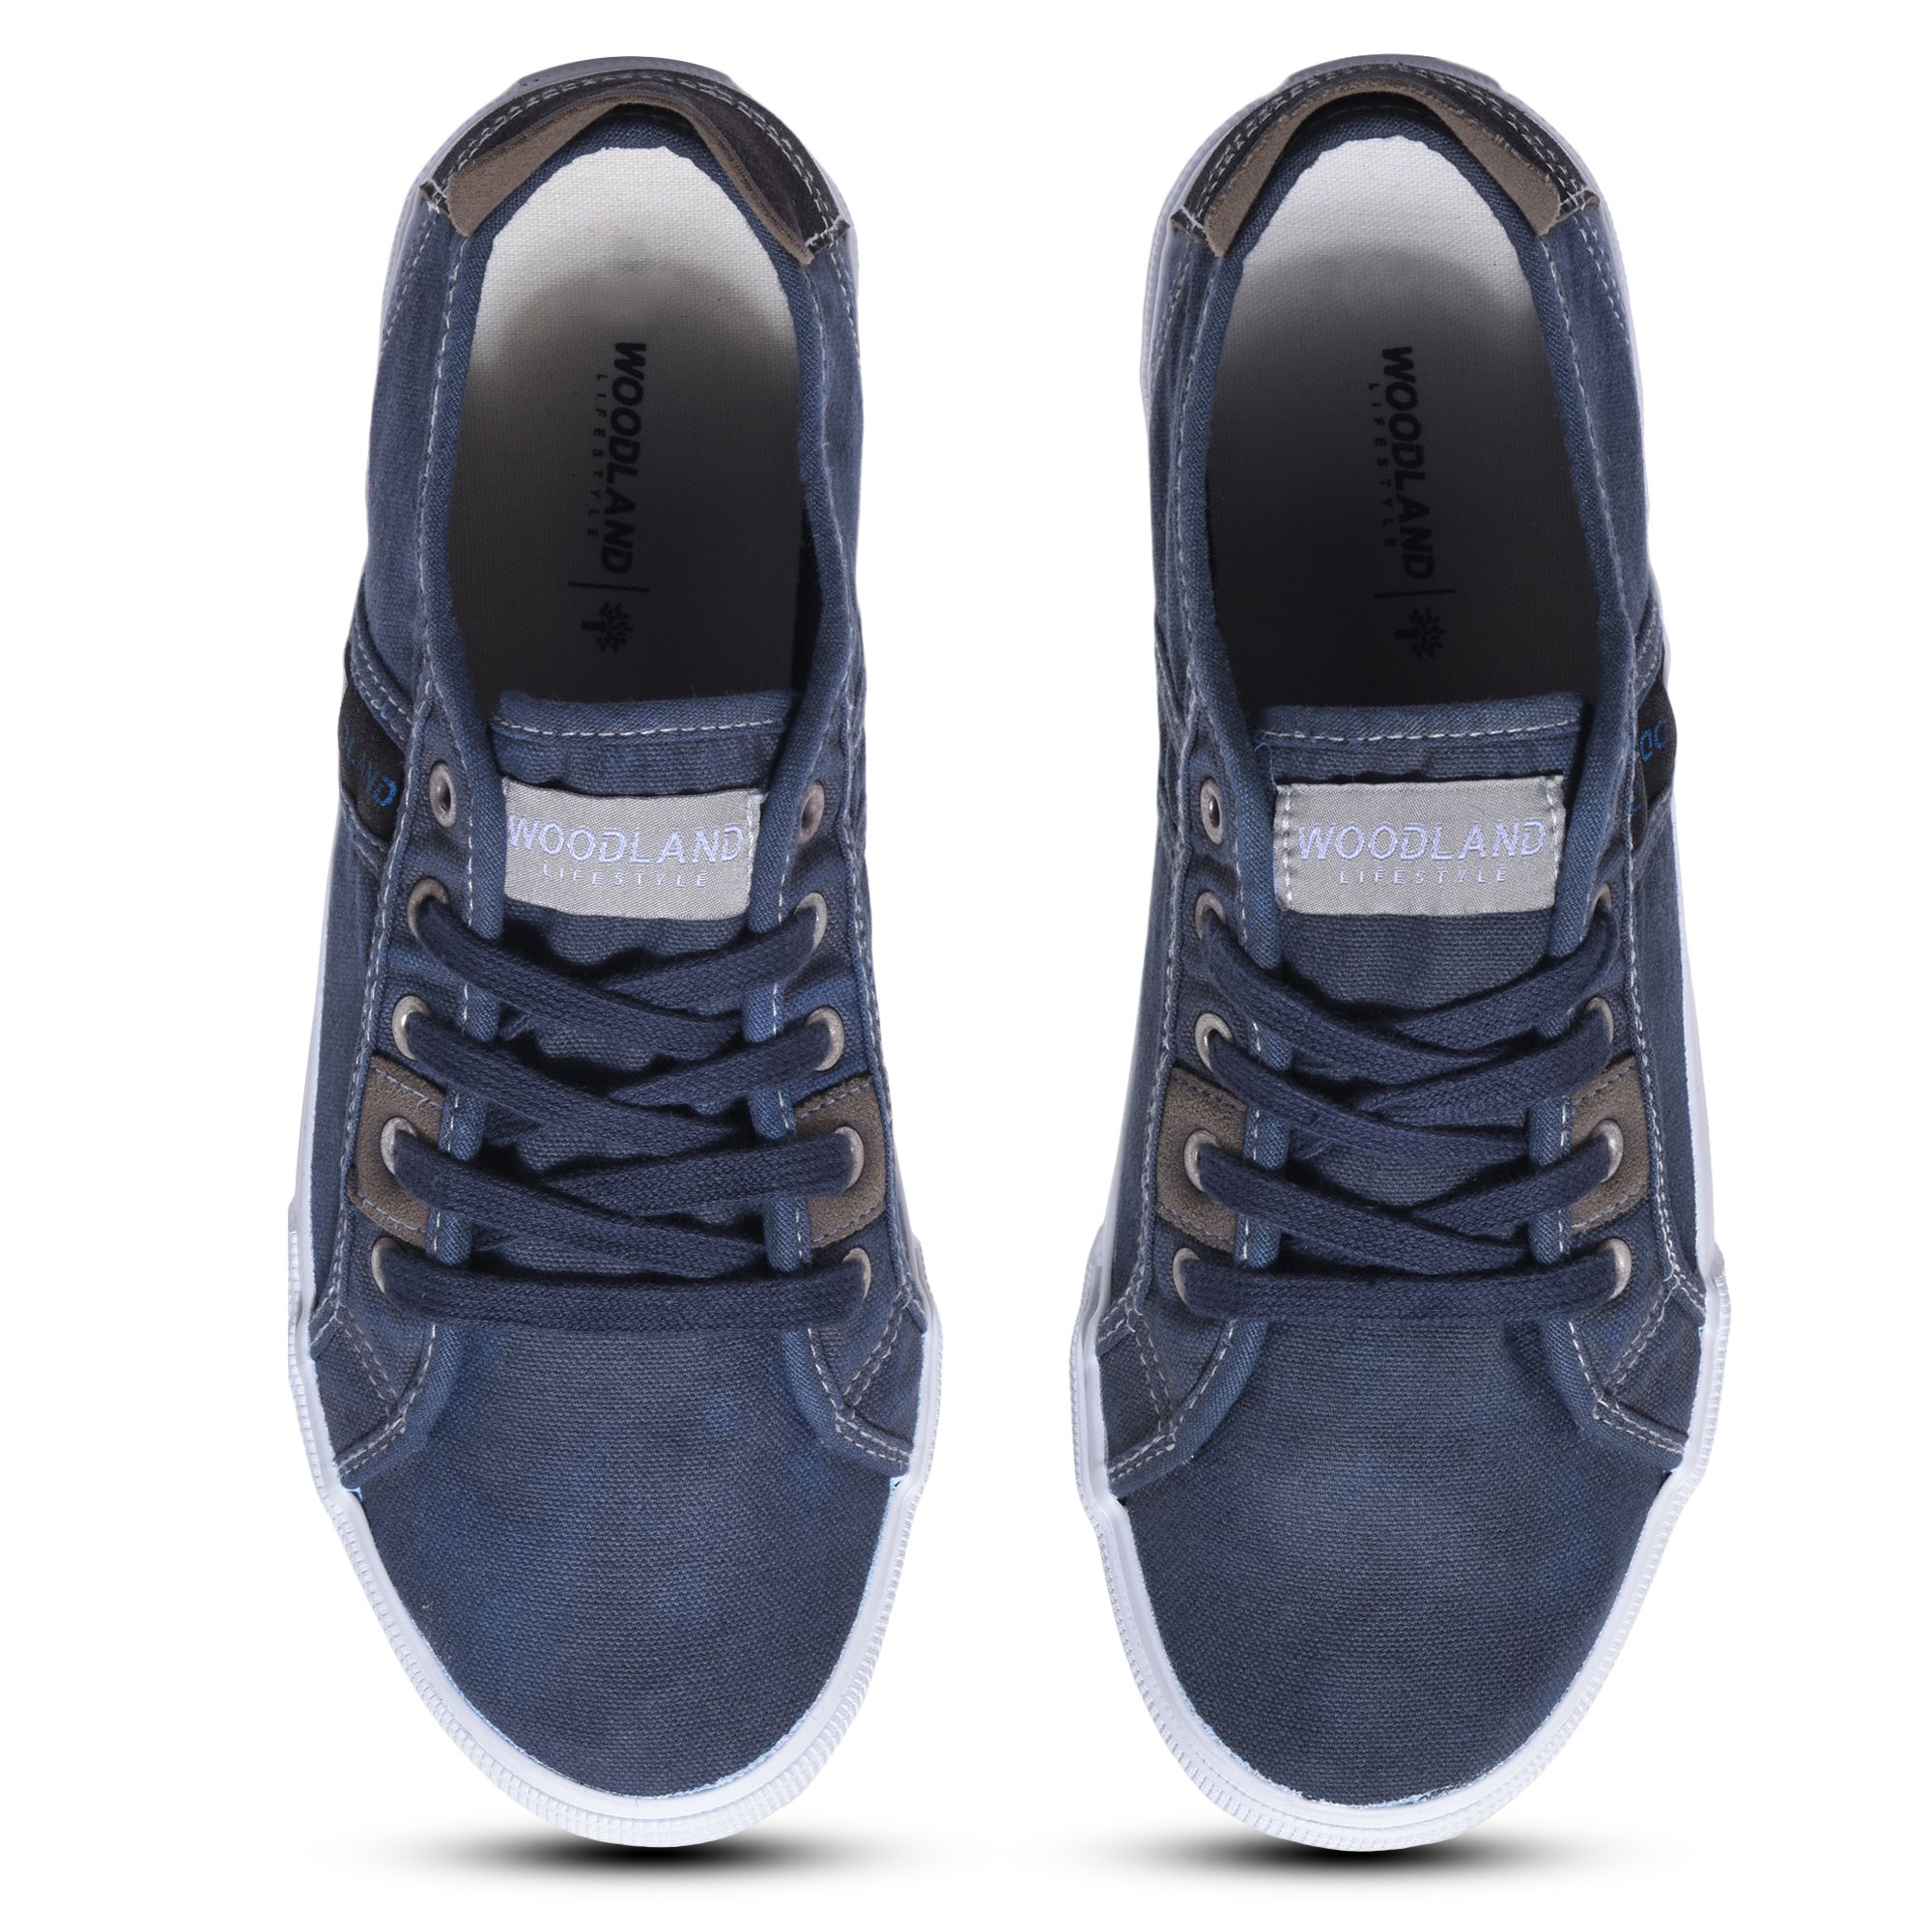 Blue canvas shoe for men